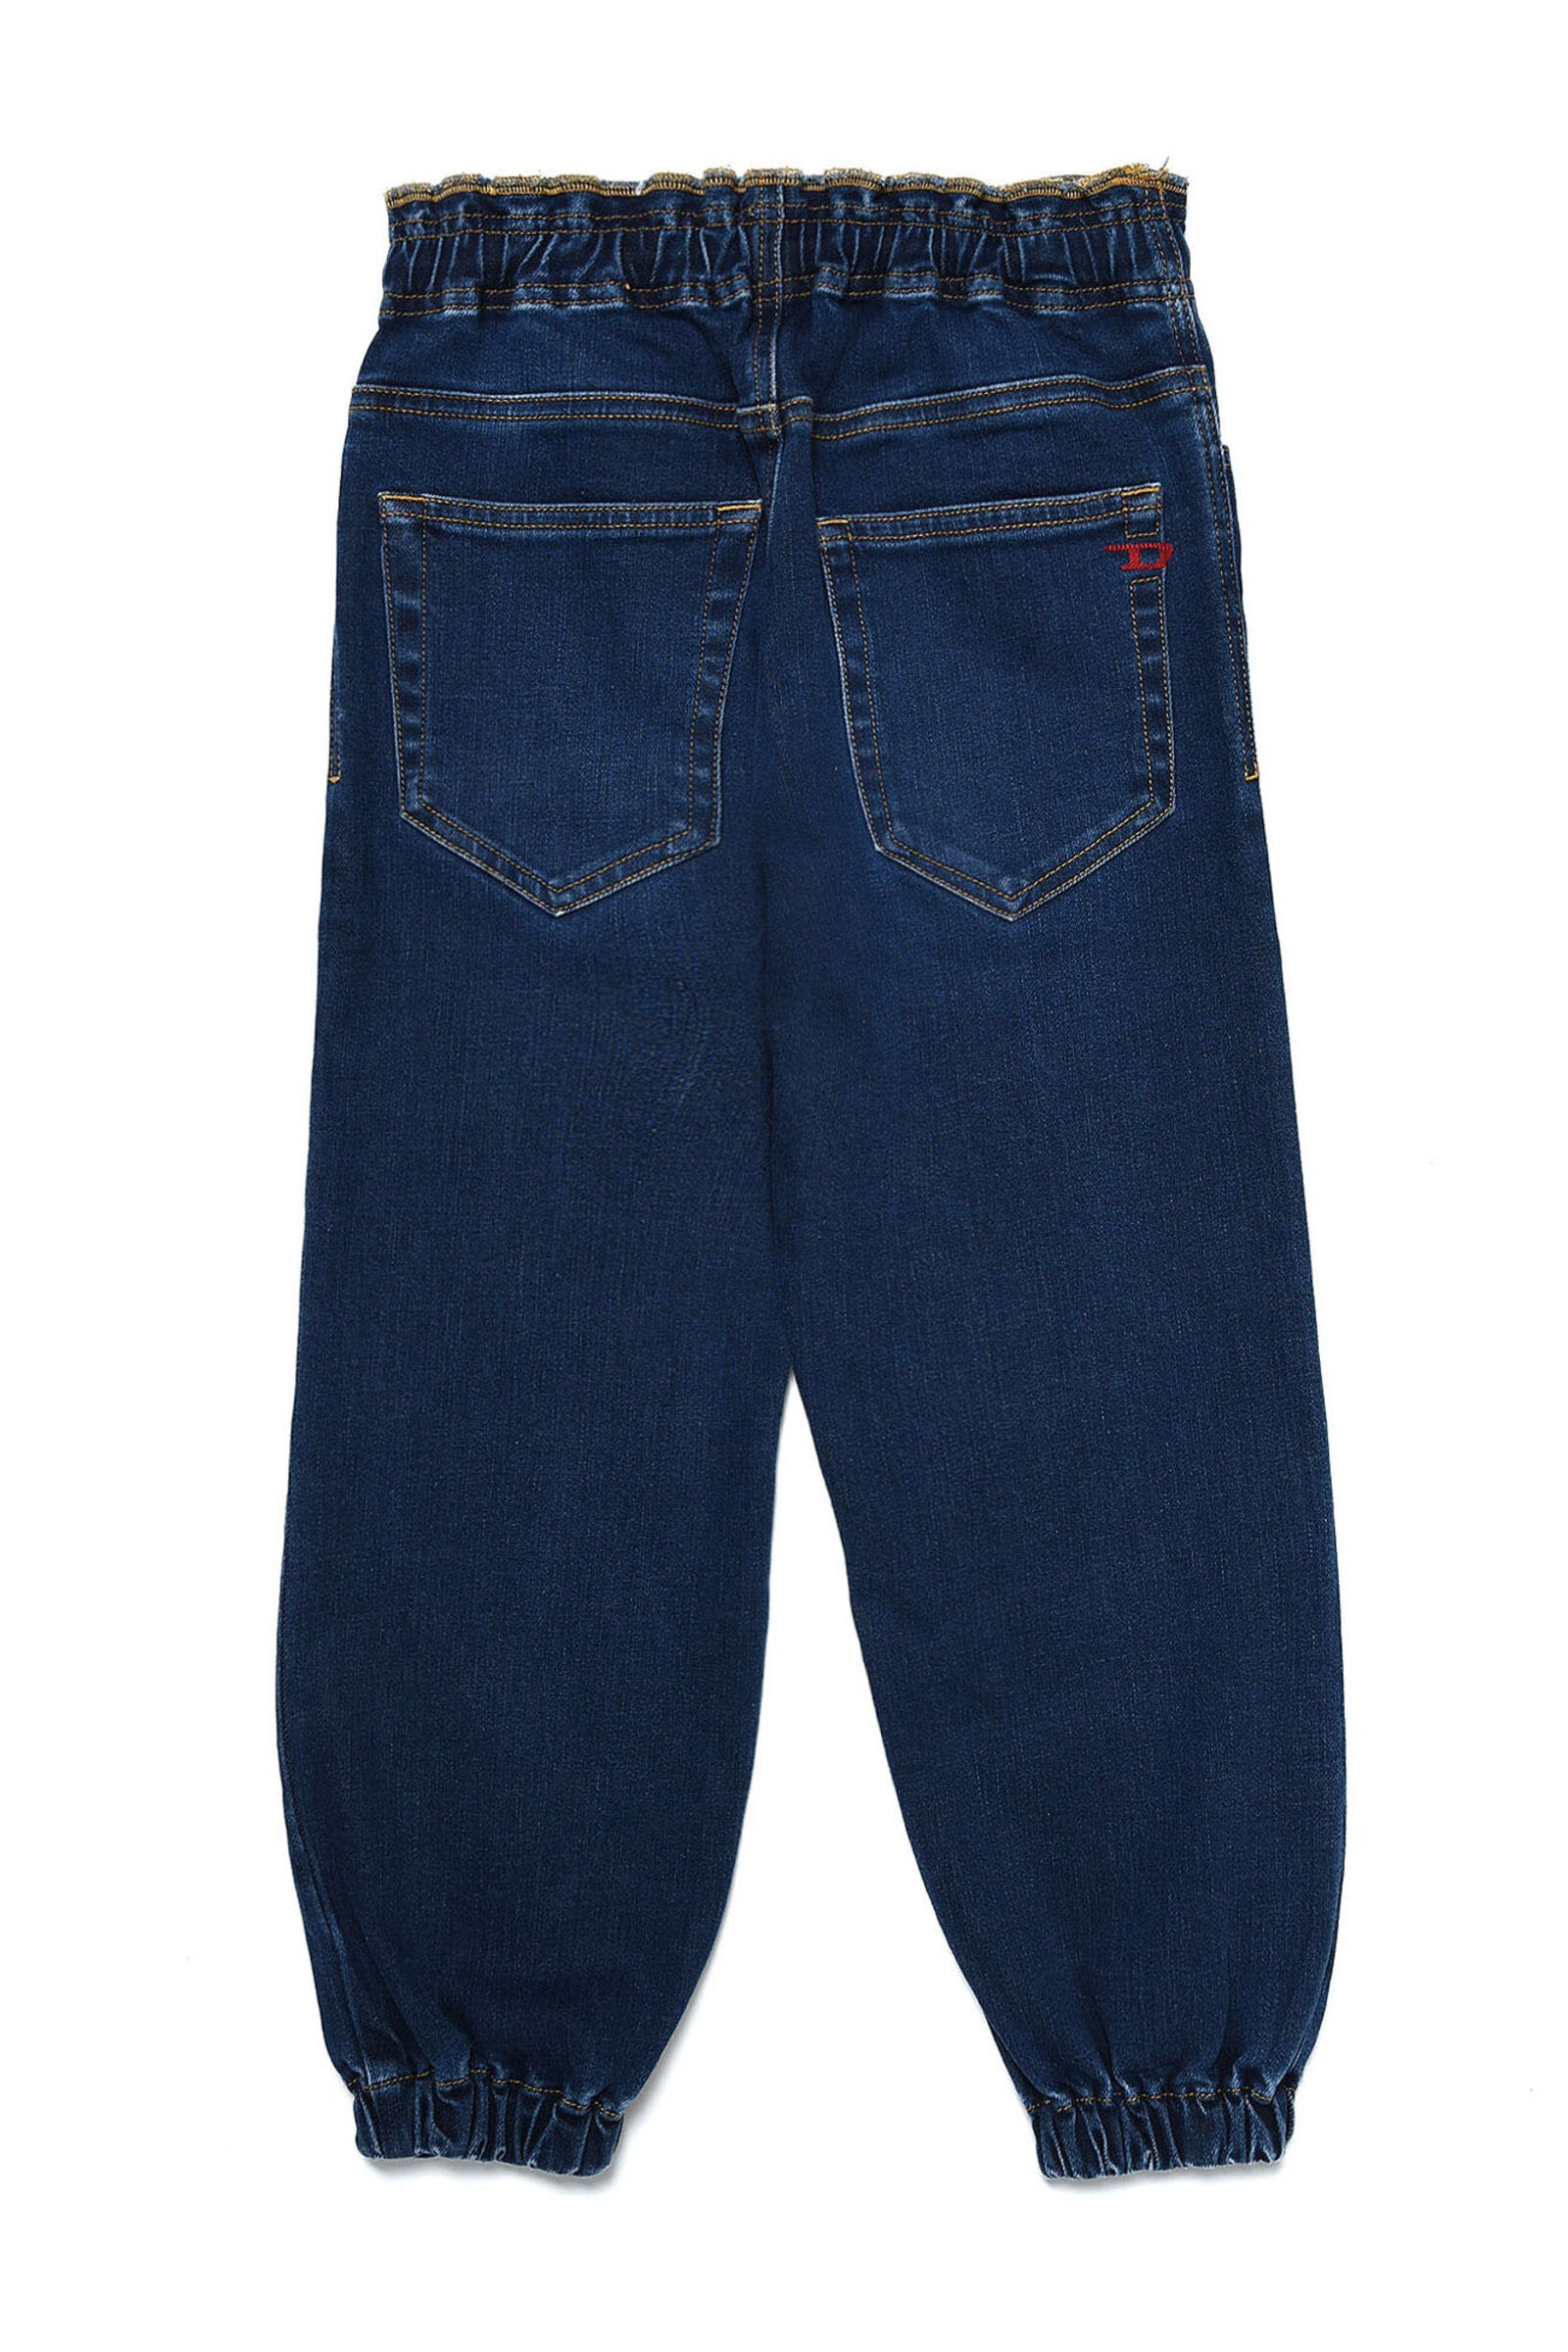 D-Mauri Straight Jeans blu dalla linea morbida 